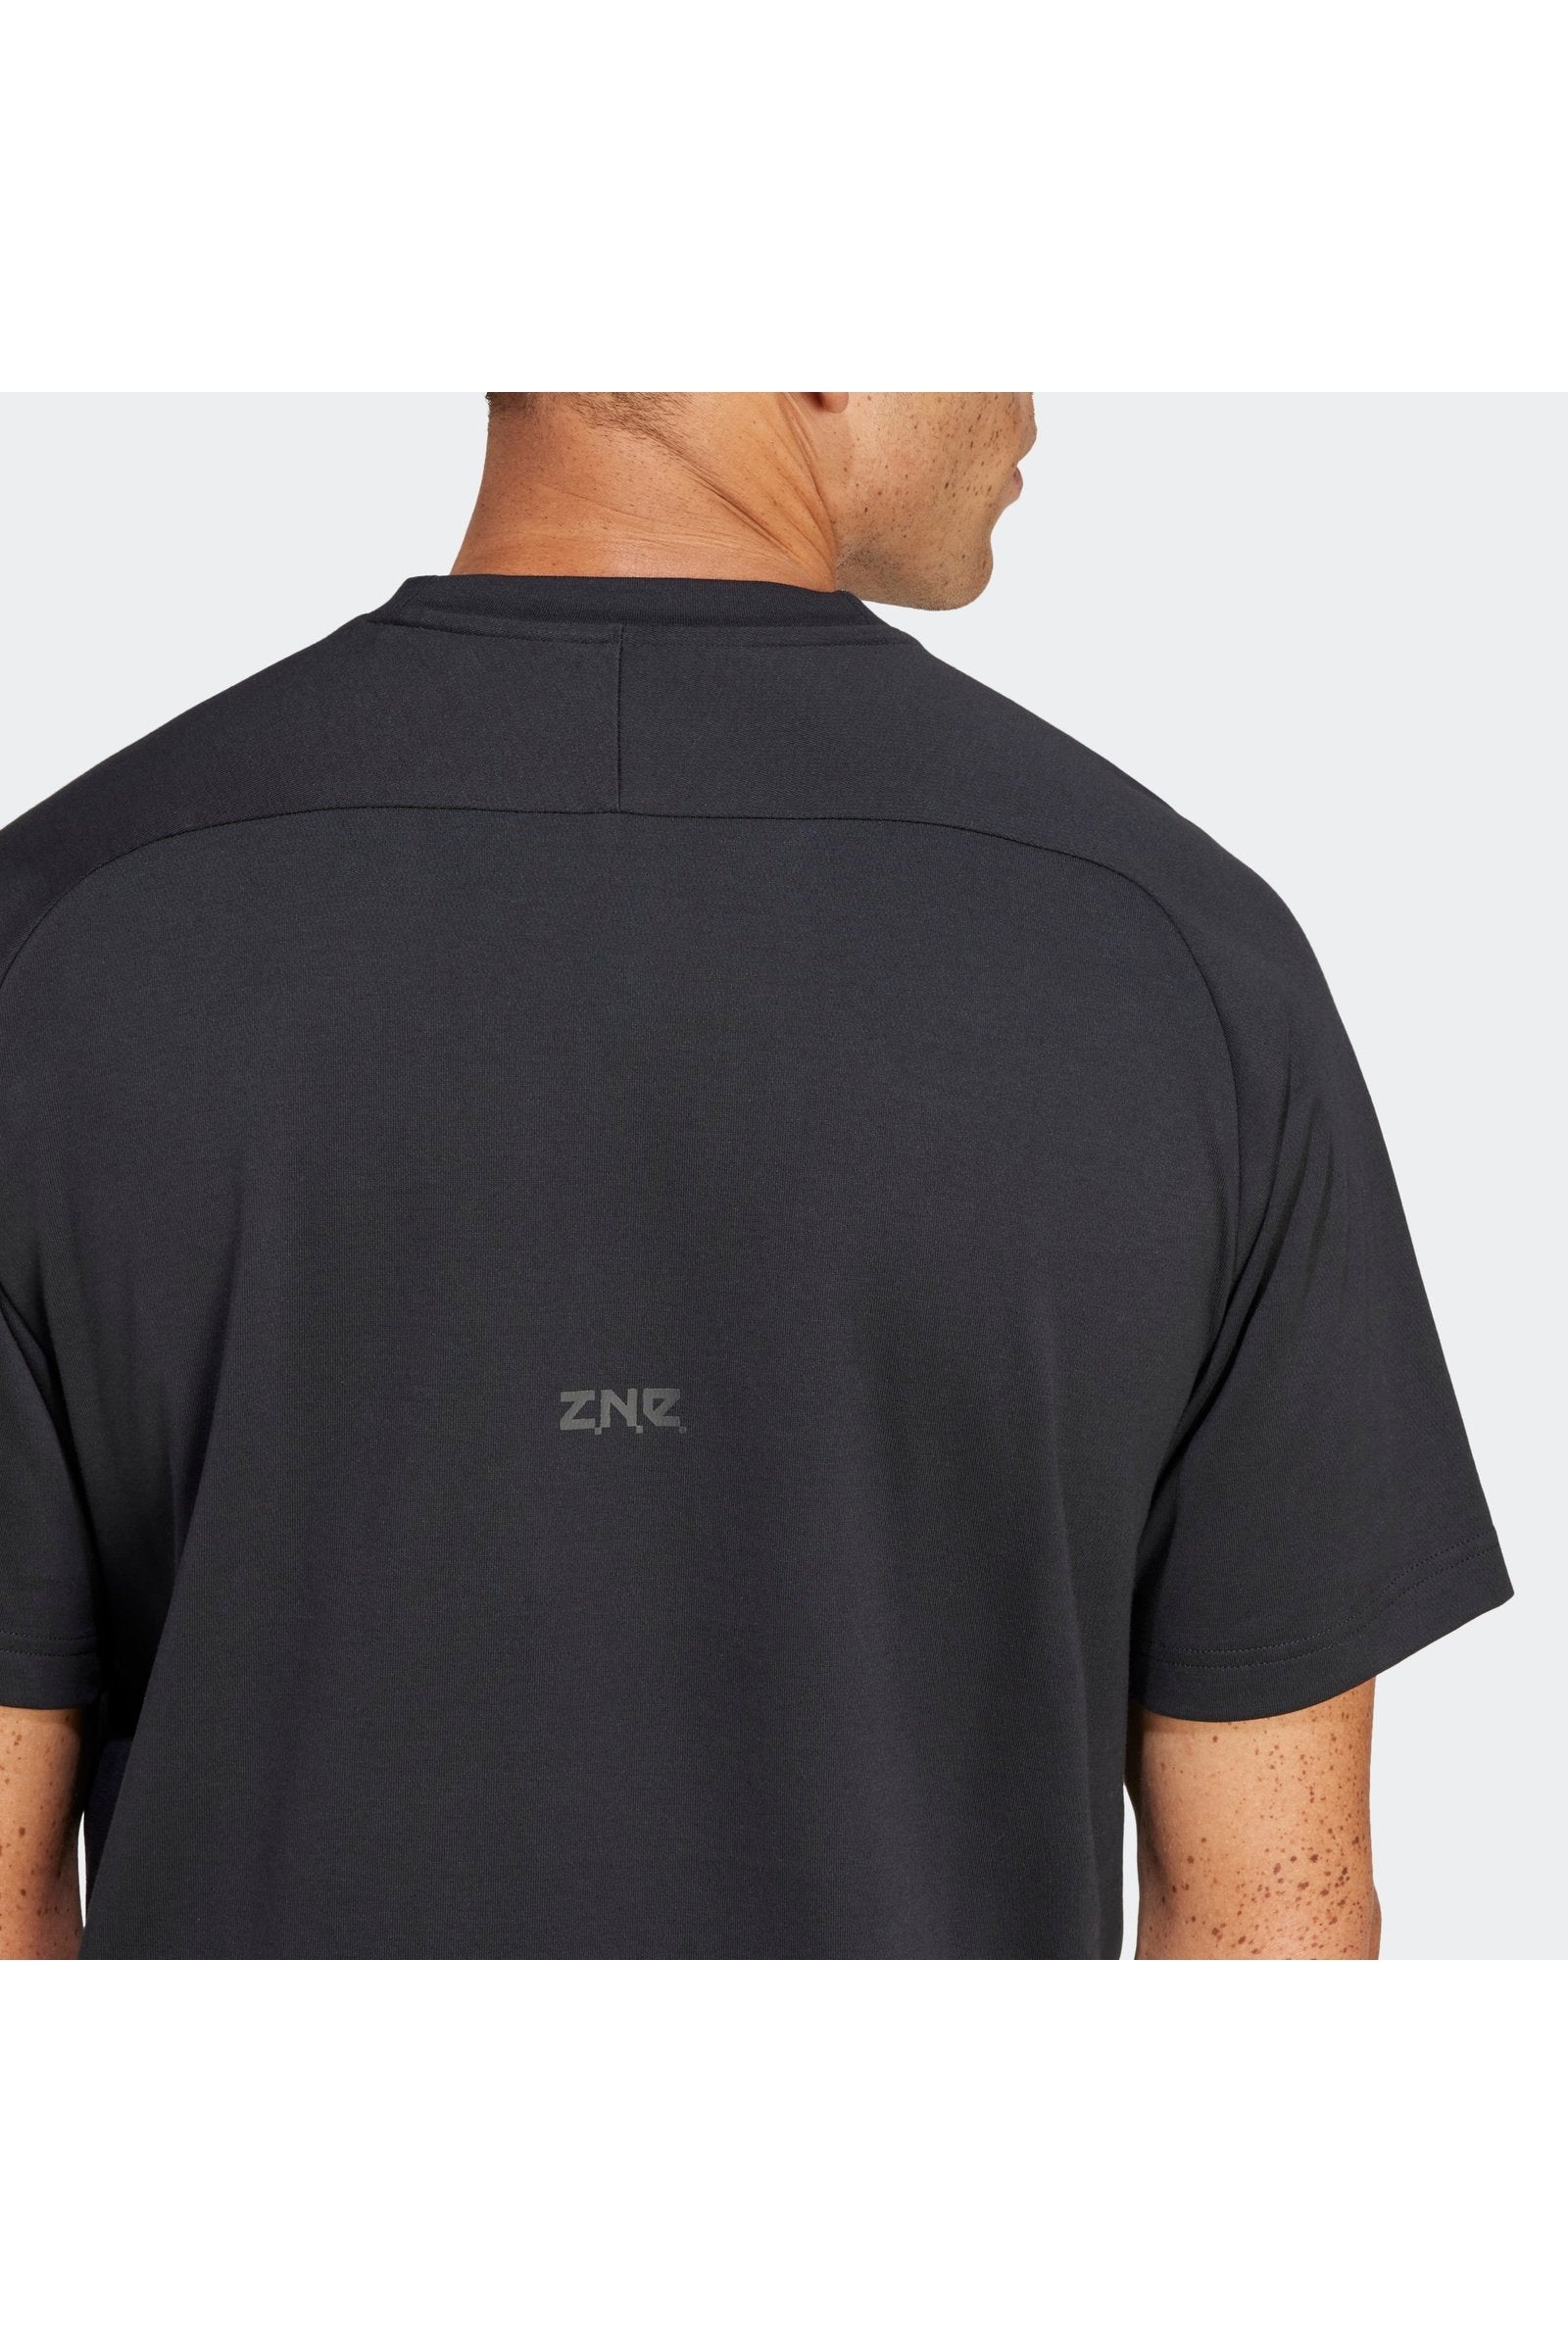 טישירט לגברים Z.N.E. בצבע שחור